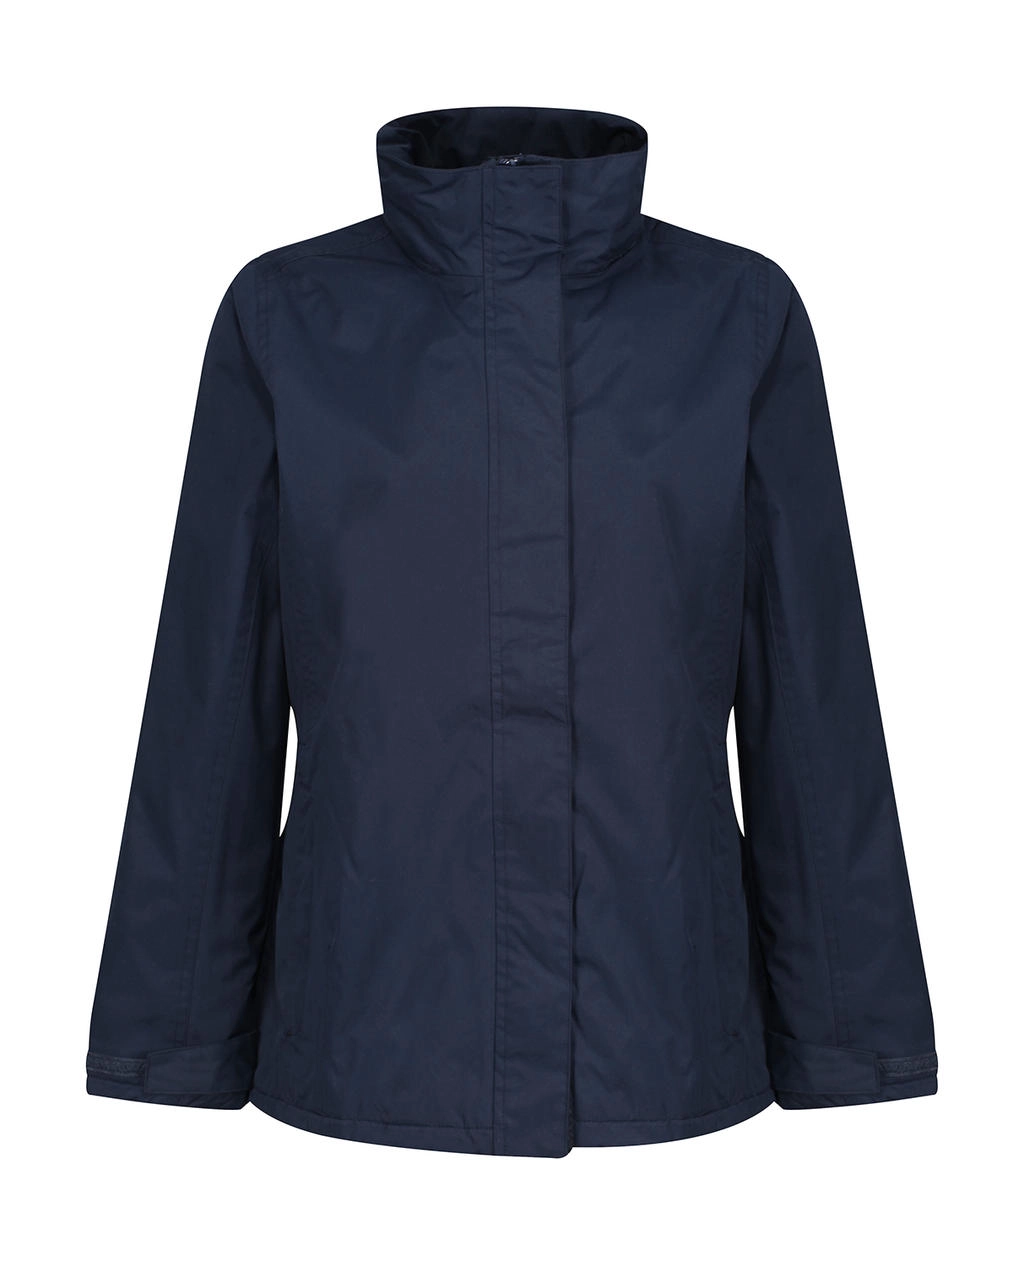 Ladies` Beauford Insulated Jacket zum Besticken und Bedrucken in der Farbe Navy mit Ihren Logo, Schriftzug oder Motiv.